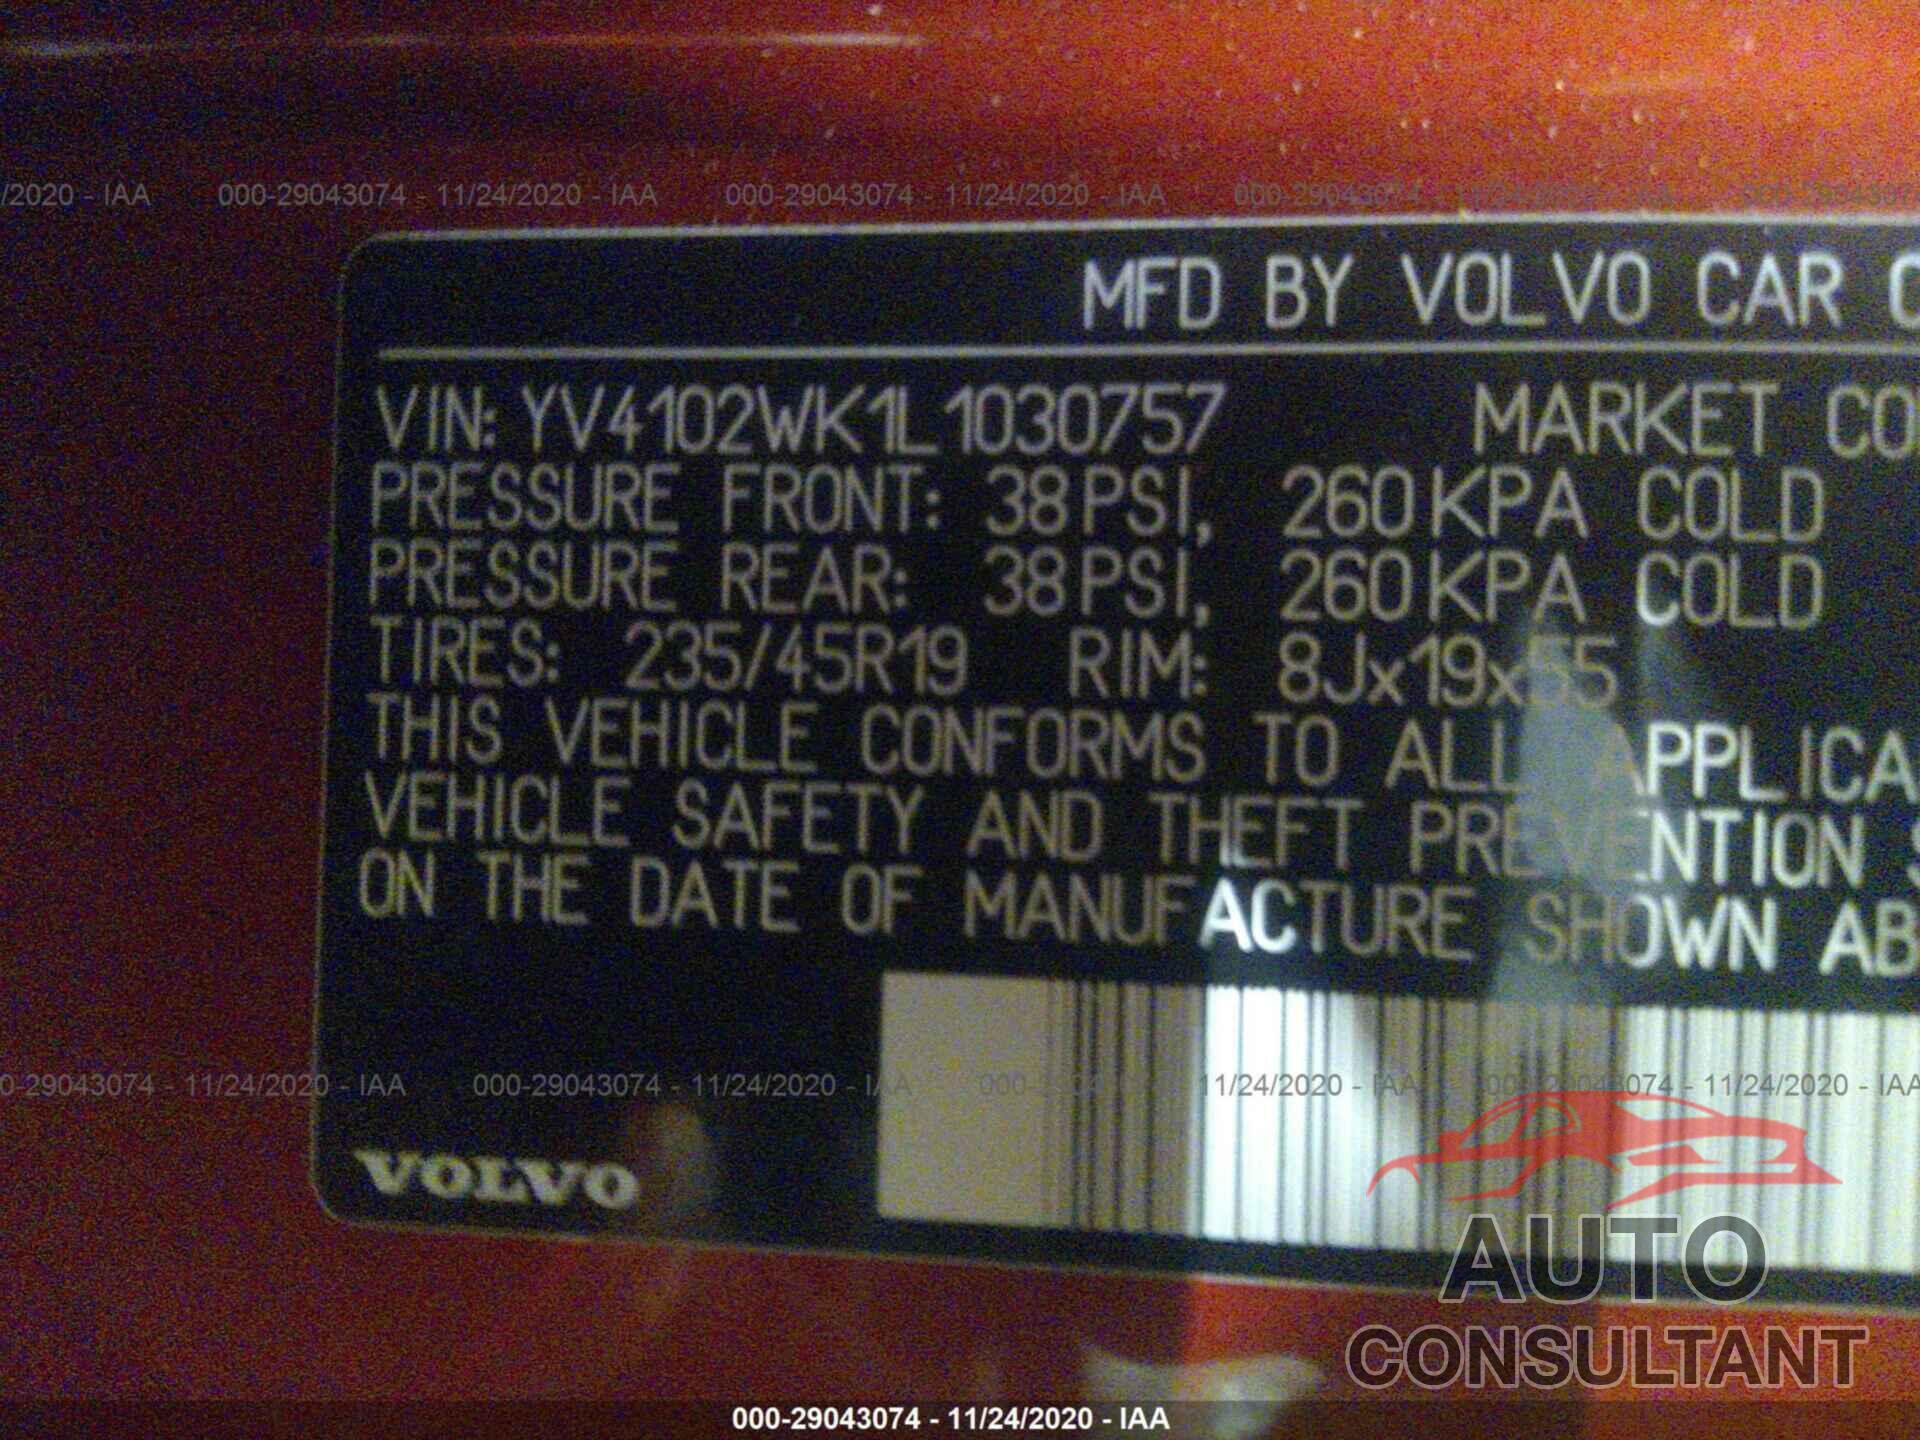 VOLVO V60 CROSS COUNTRY 2020 - YV4102WK1L1030757